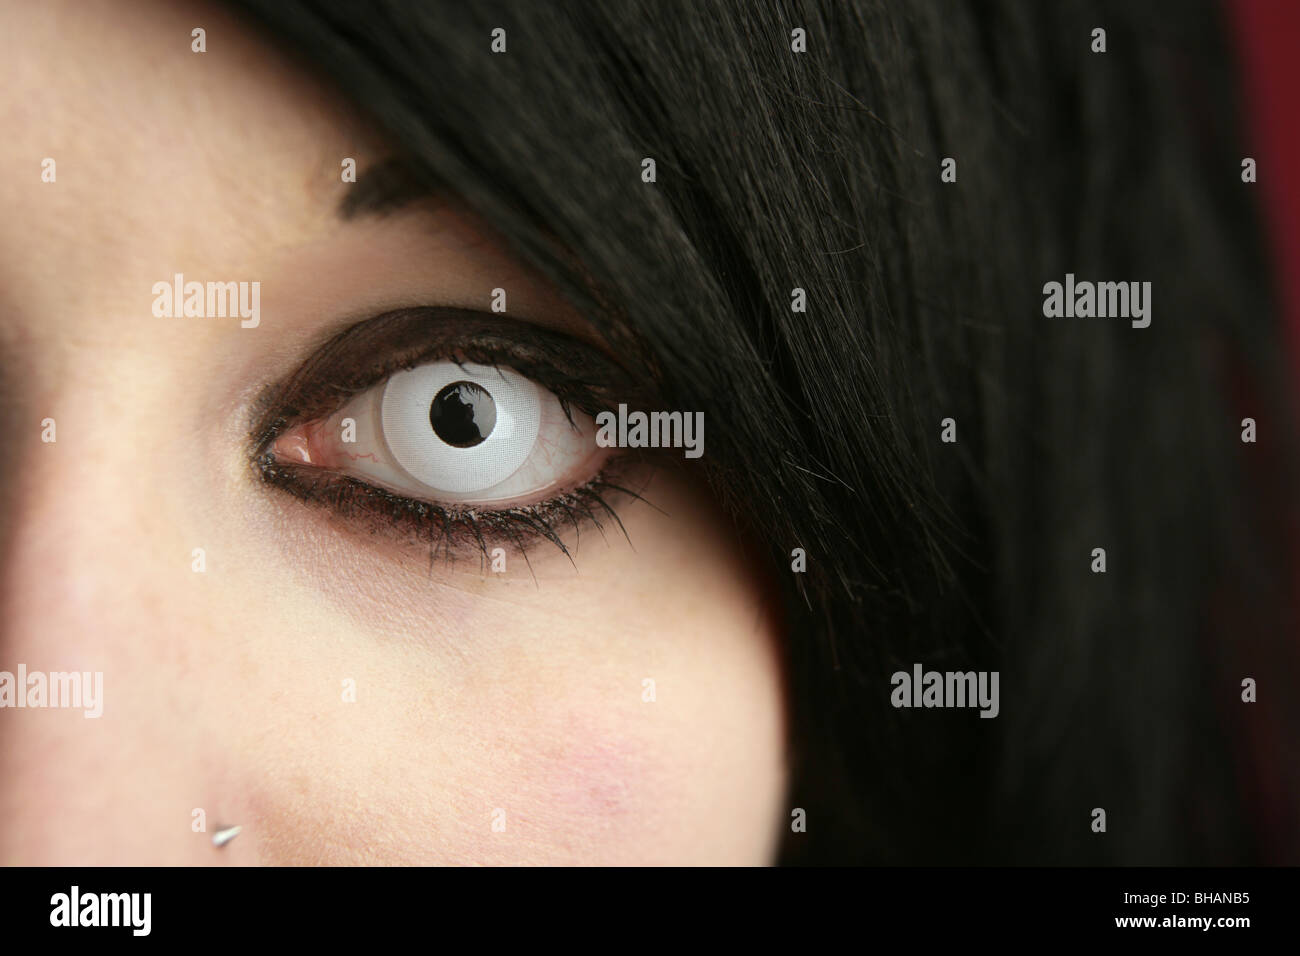 Jeune fille goth's eye avec une lentille de contact de couleur. Banque D'Images